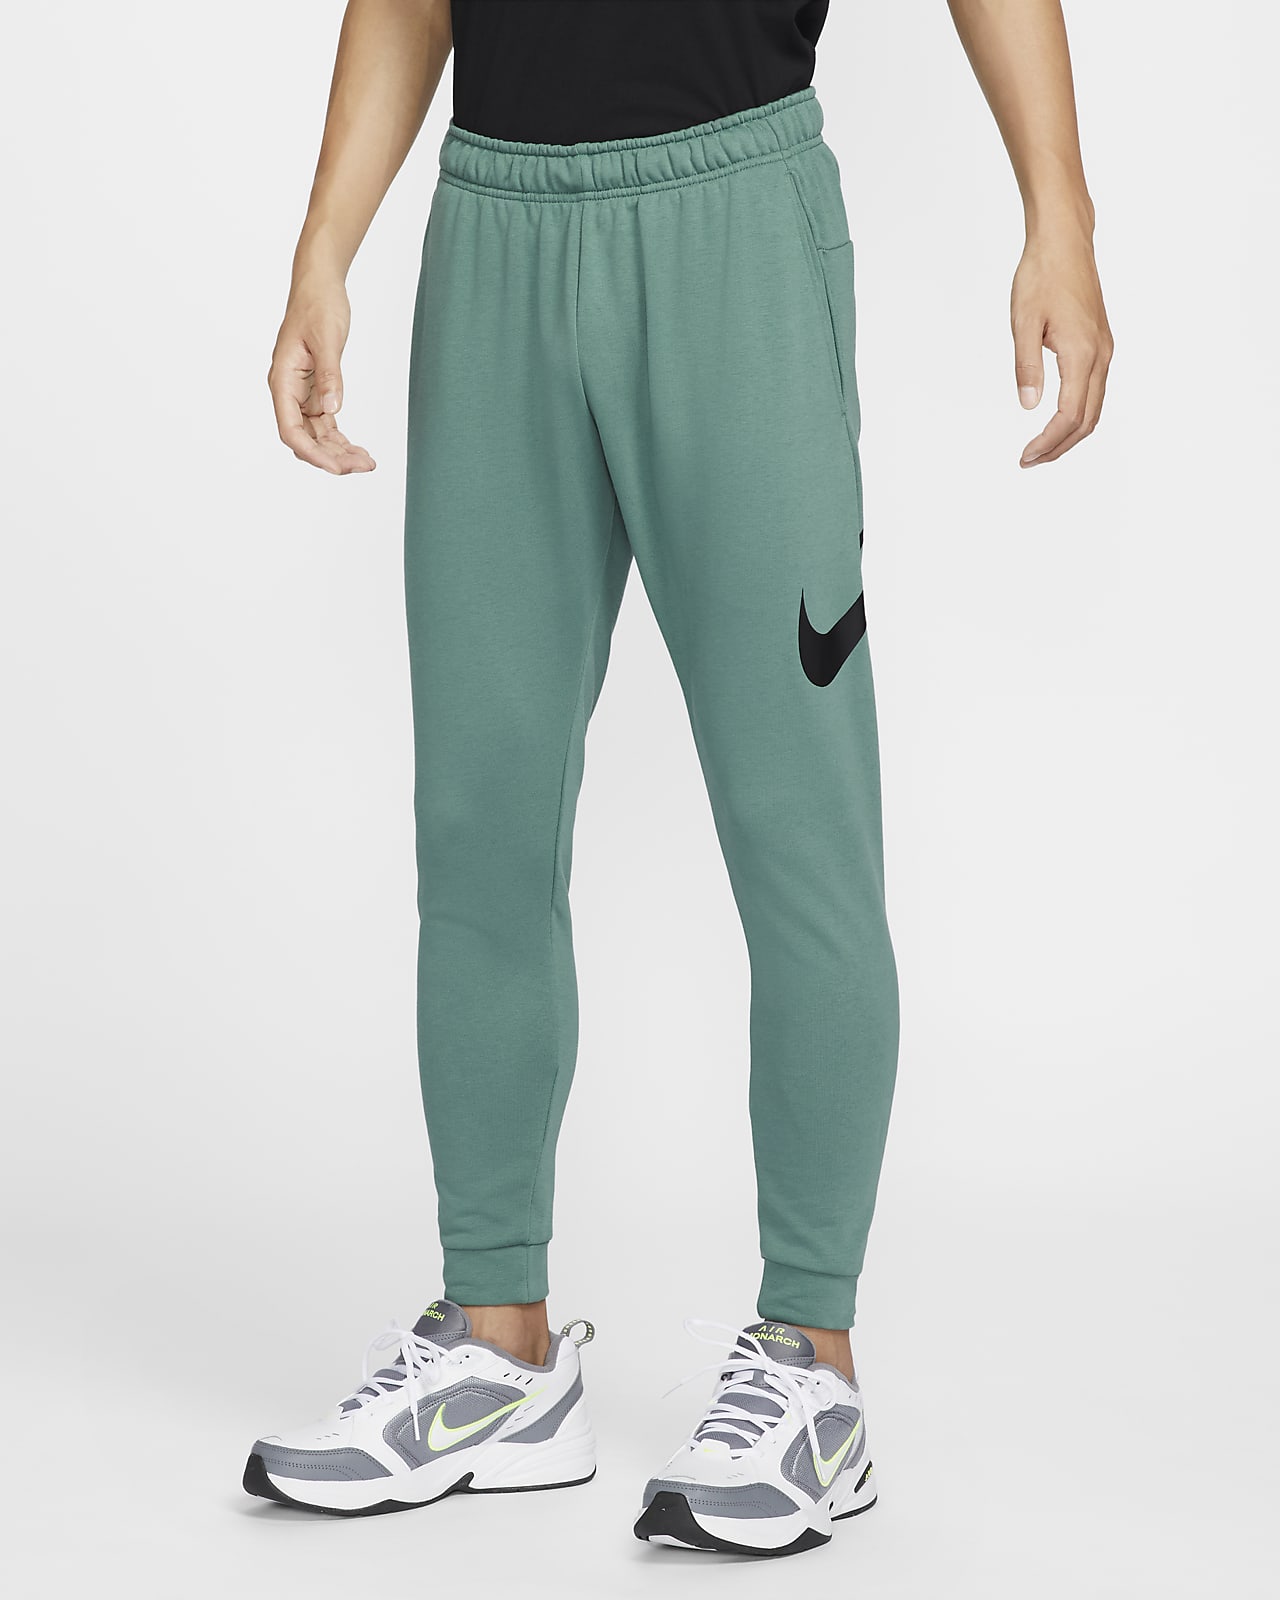 กางเกงเทรนนิ่งขายาวทรงขาเรียวผู้ชาย Nike Dri-FIT